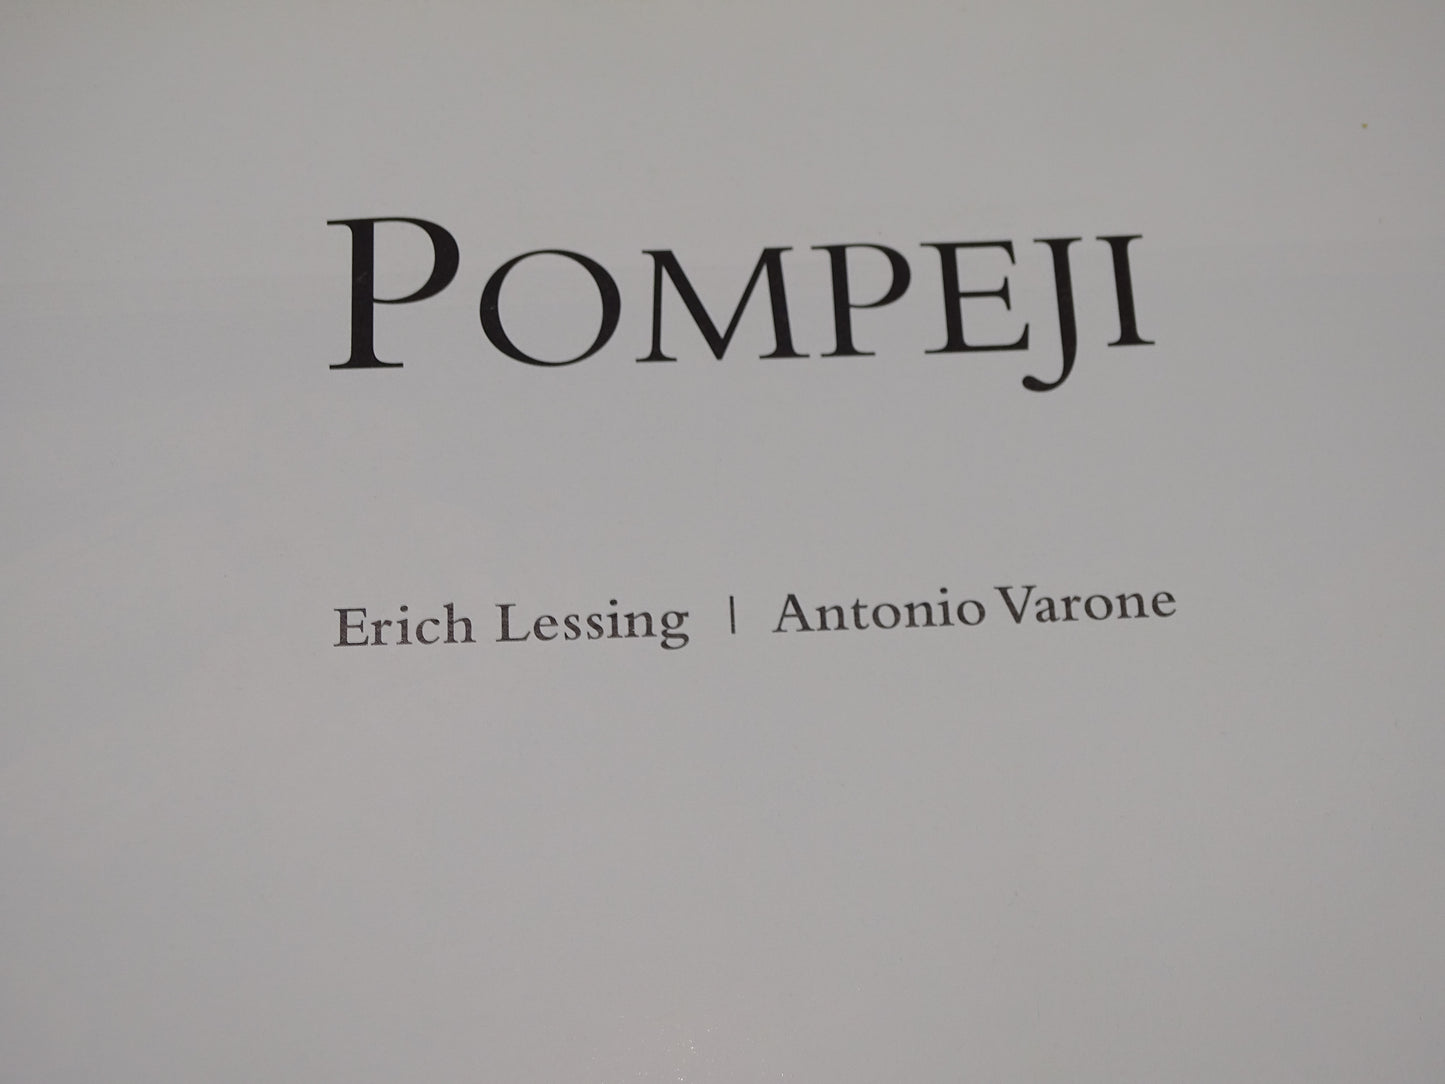 Boek: Pompeji, 1996